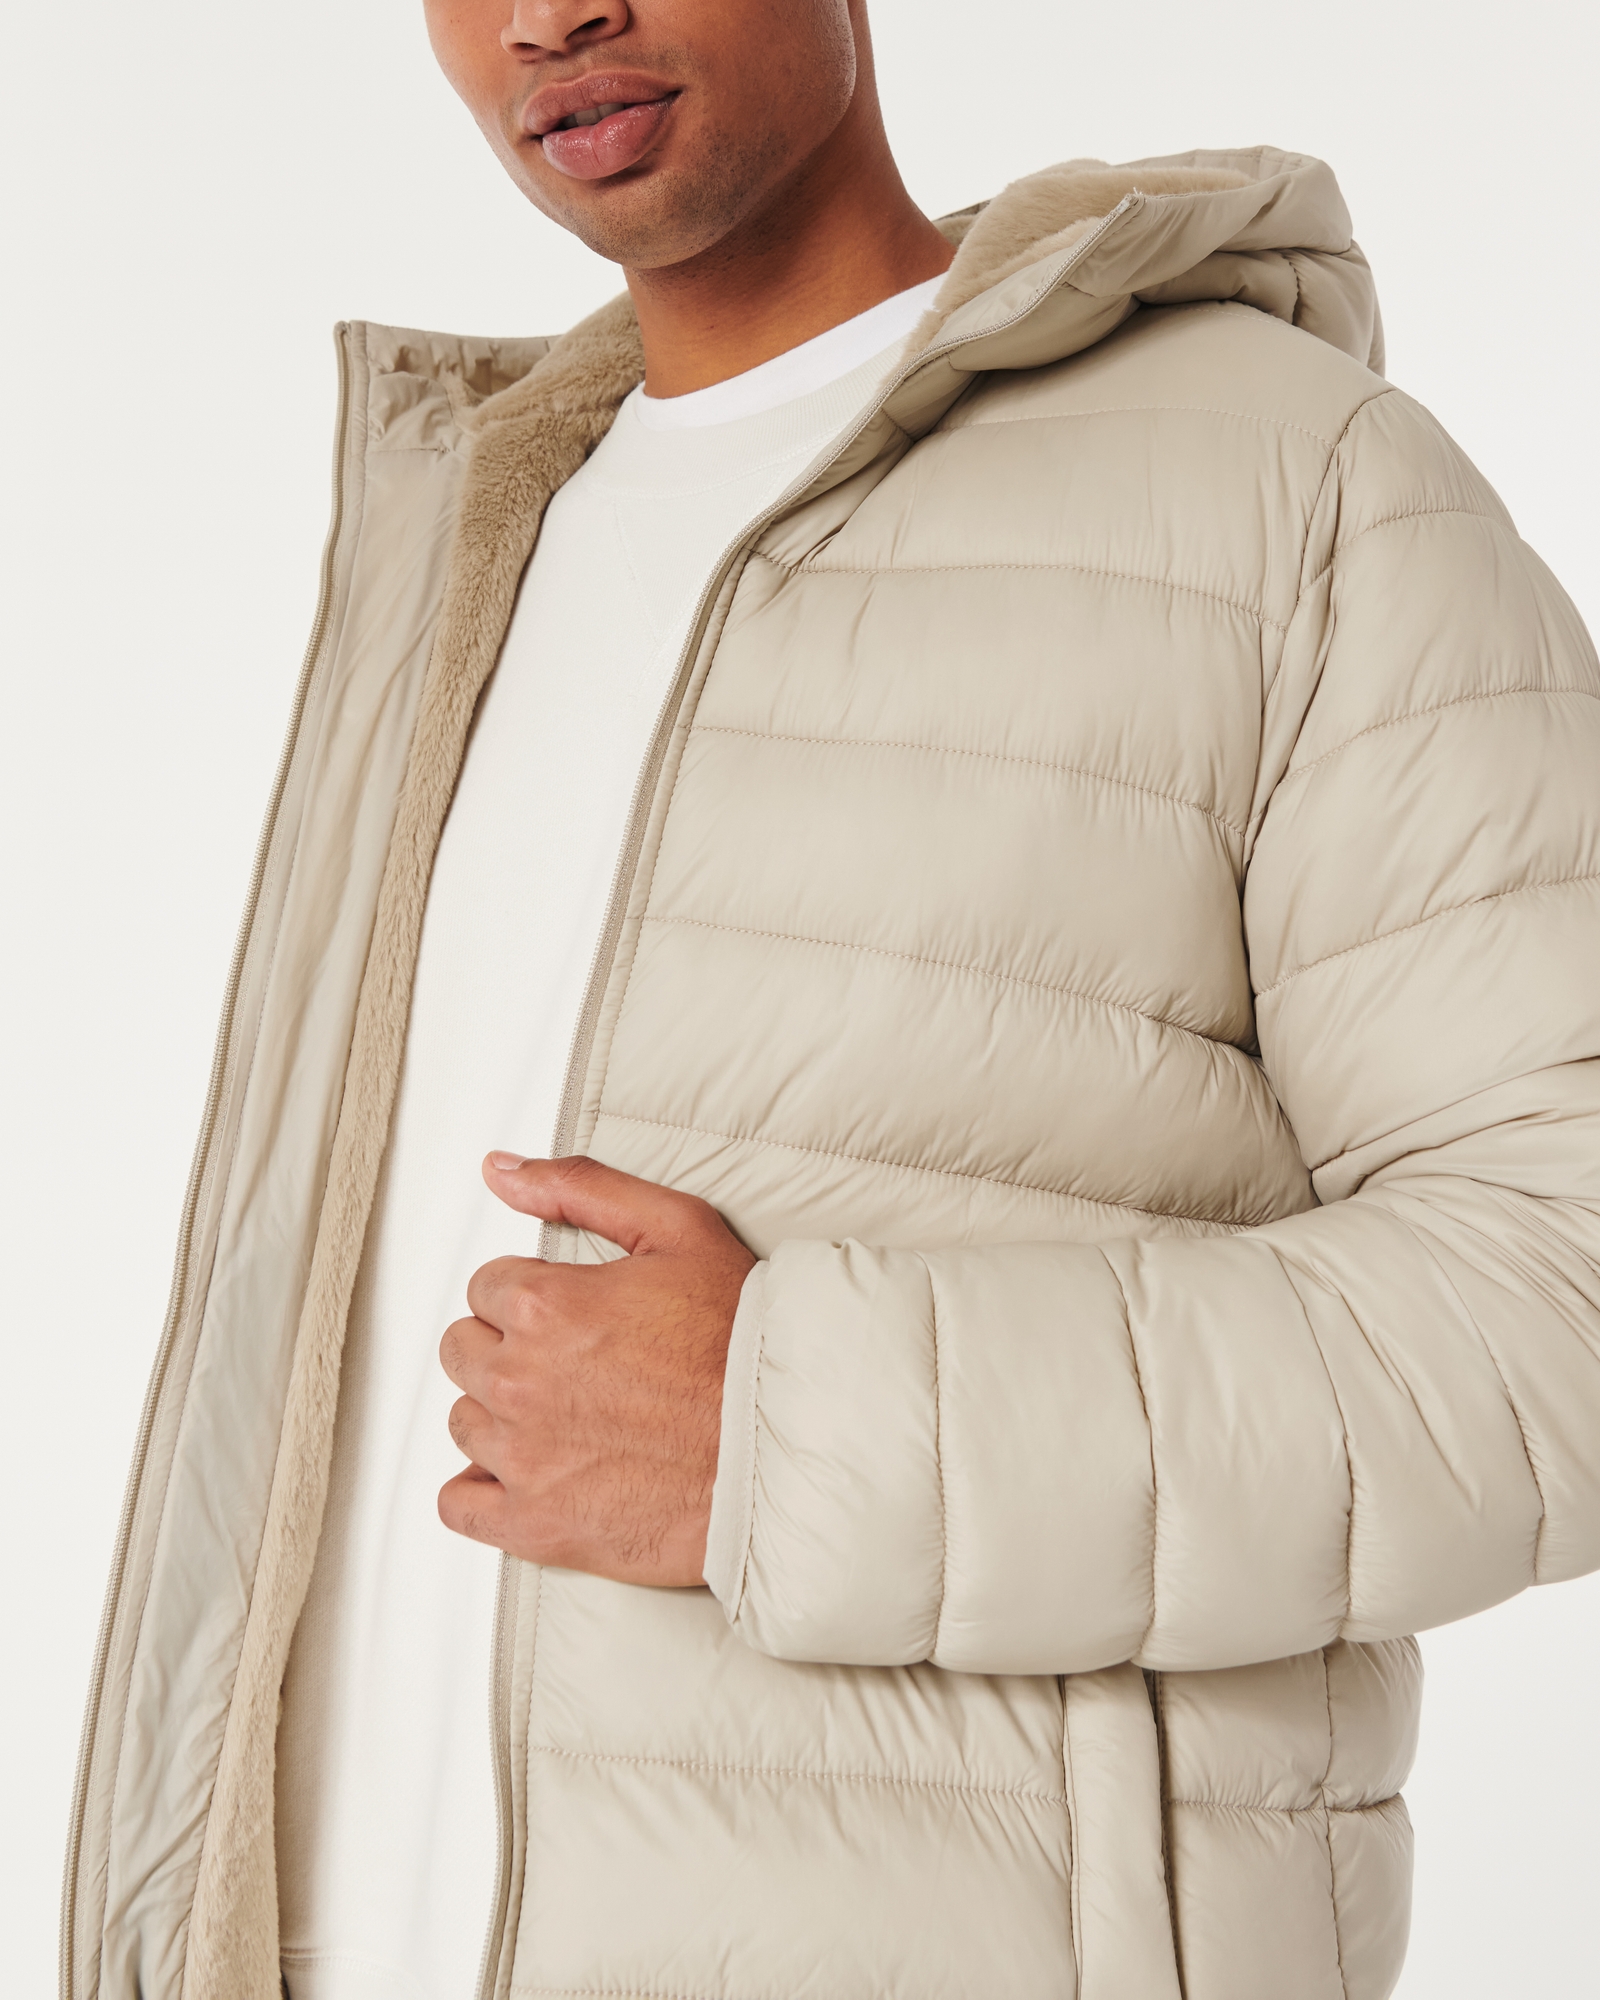 Hollister, Jackets & Coats, Hollister White Puffer Jacket Size Large